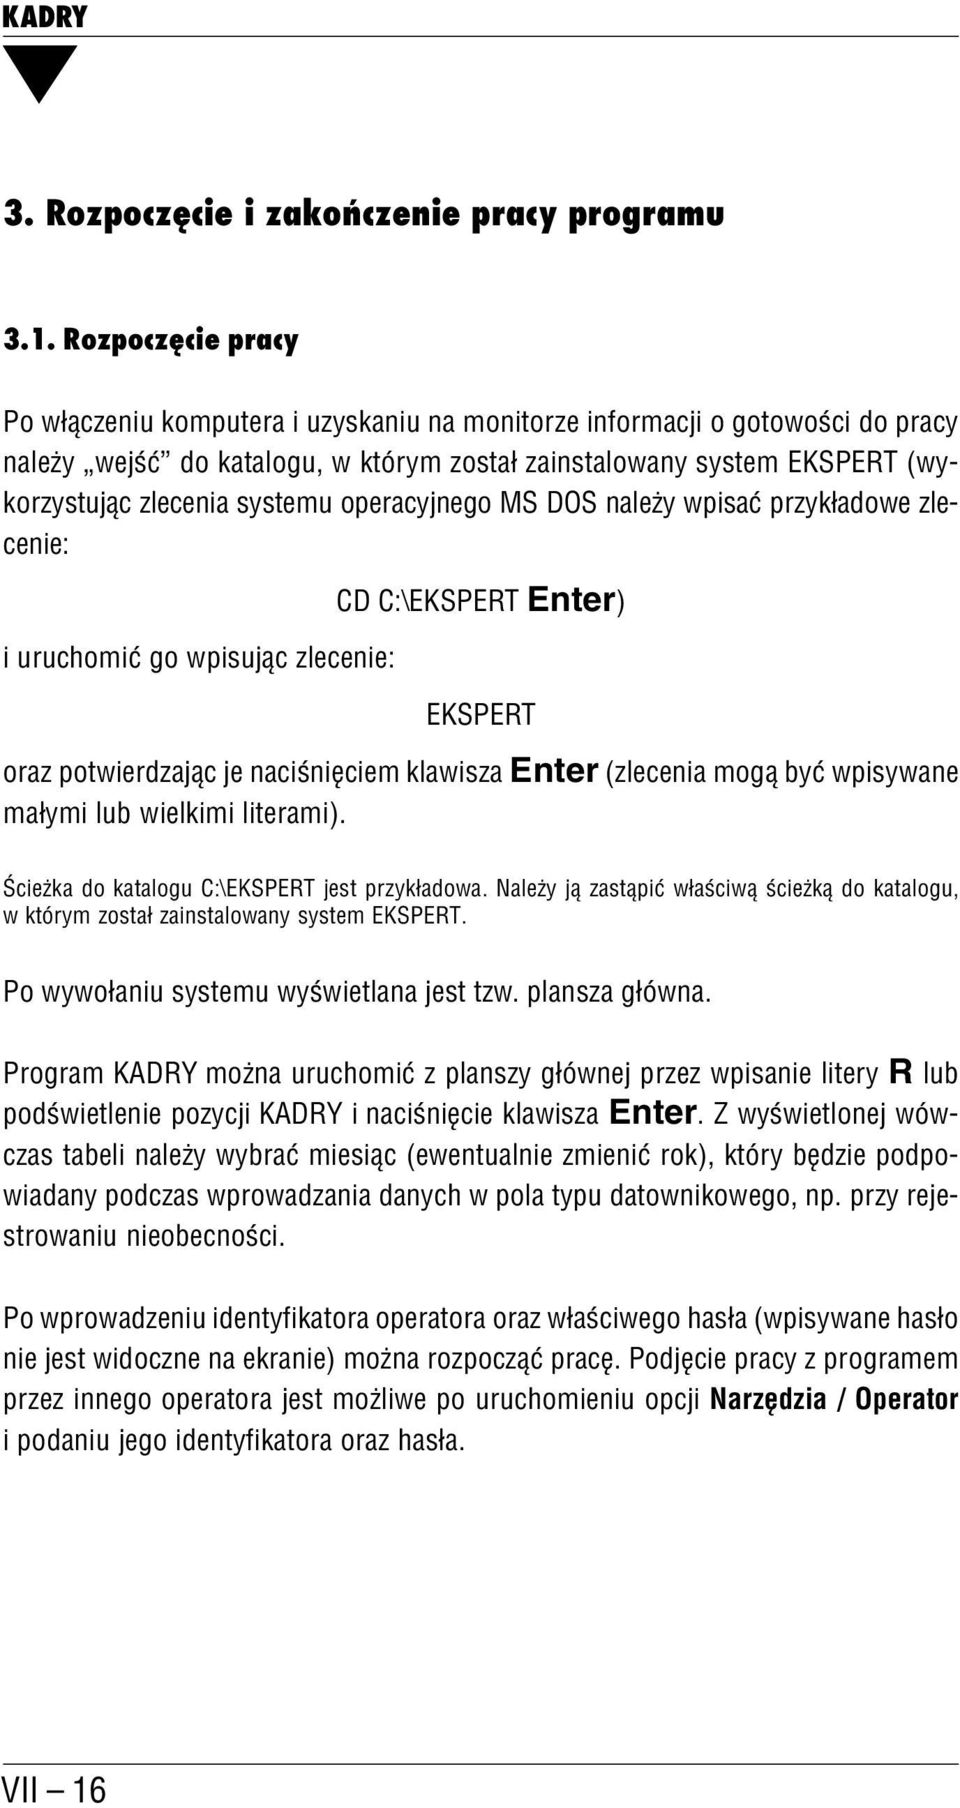 systemu operacyjnego MS DOS należy wpisać przykładowe zle cenie: i uruchomić go wpisując zlecenie: CD C:\EKSPERT Enter) EKSPERT oraz potwierdzając je naciśnięciem klawisza Enter (zlecenia mogą być